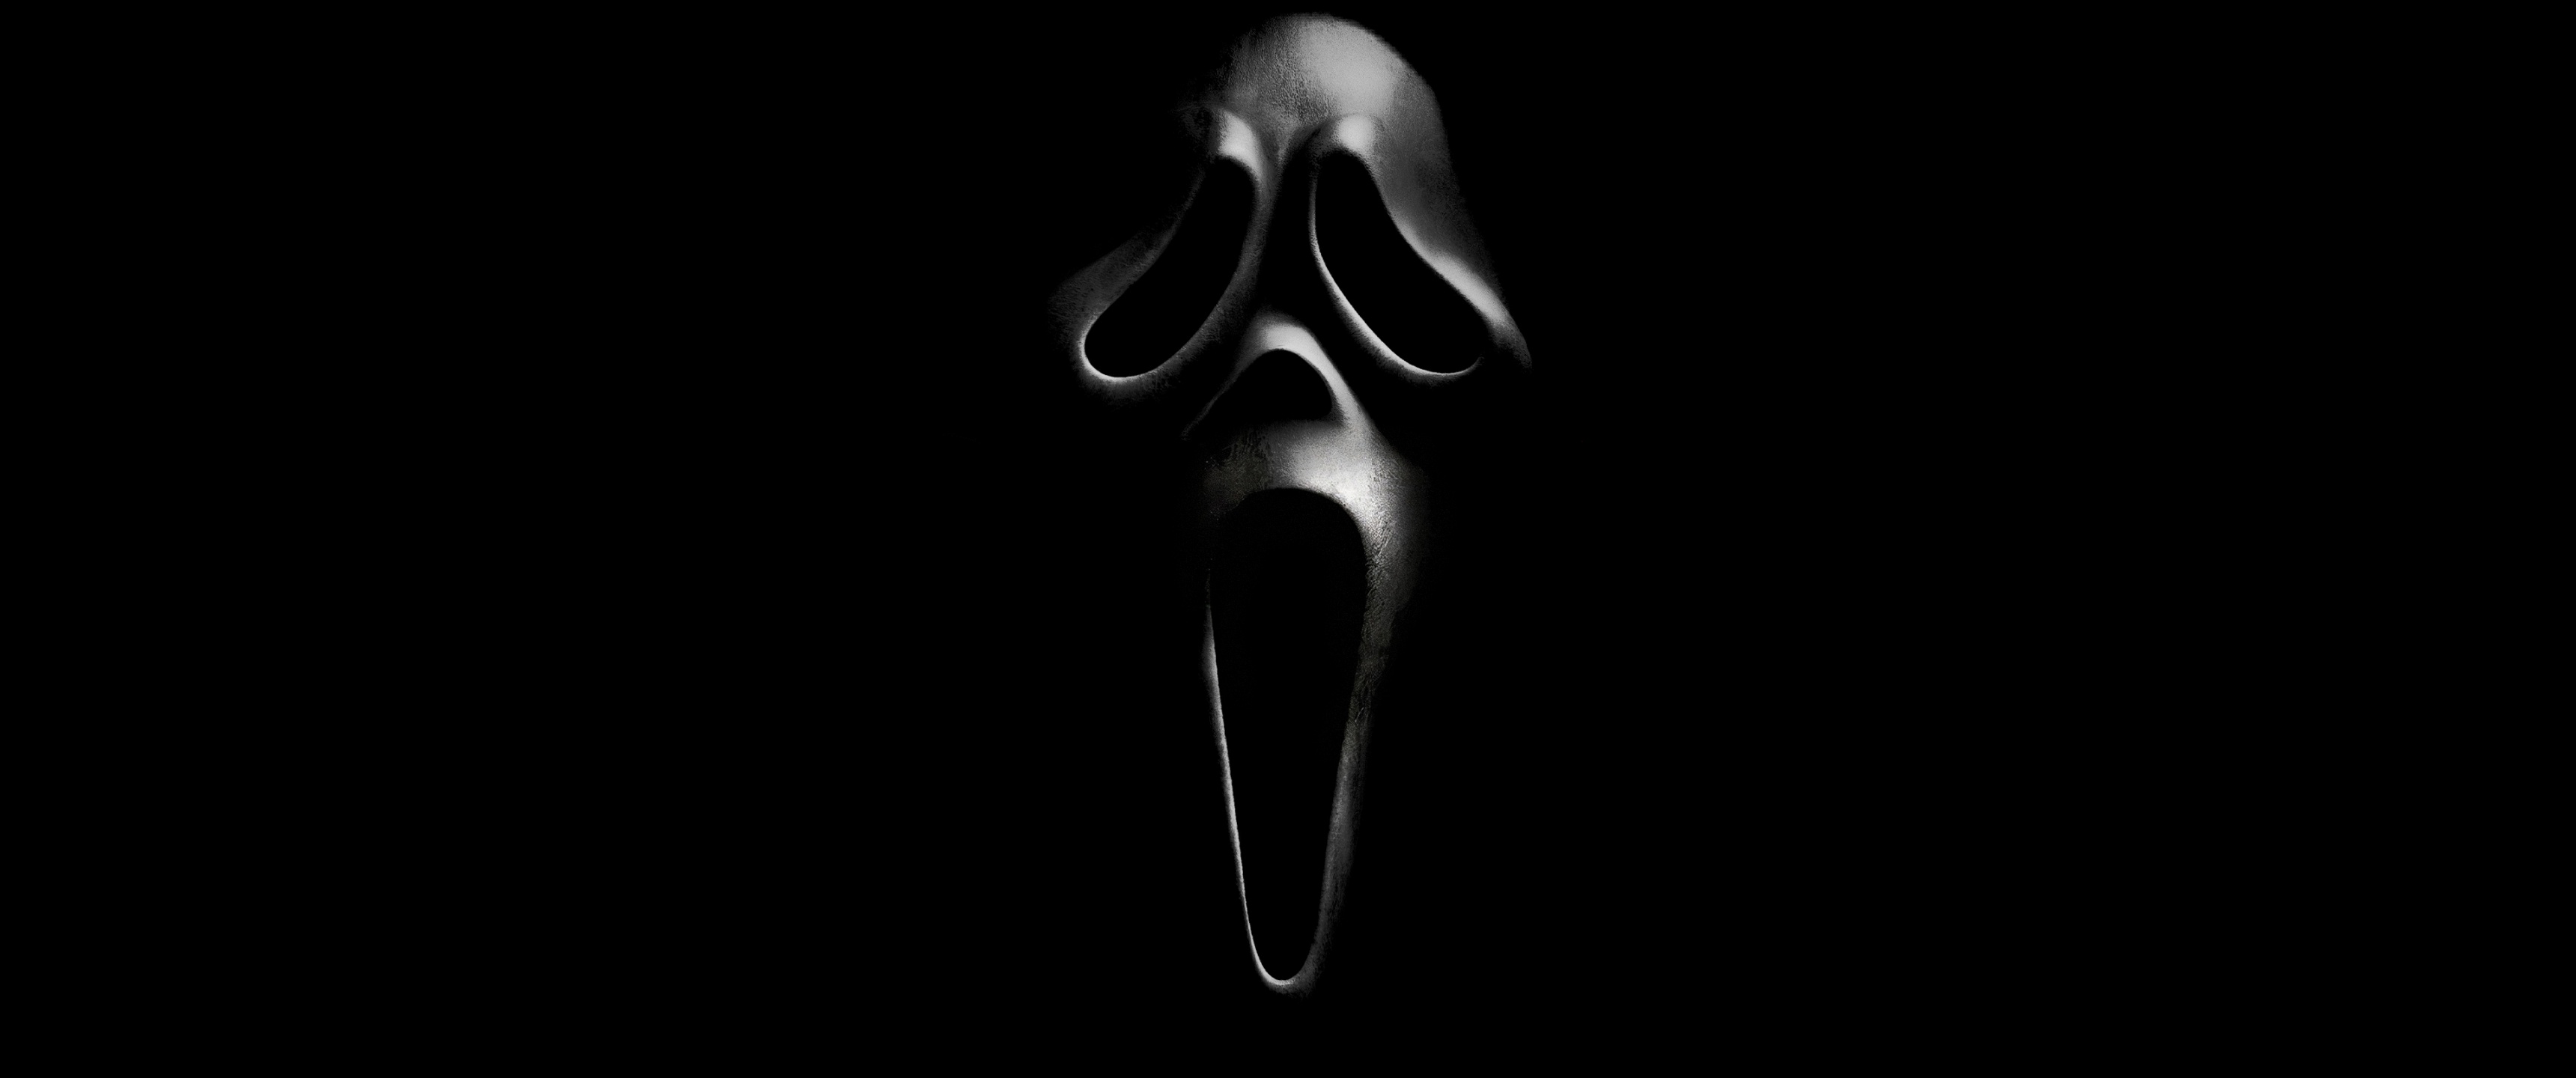 Hình nền đen kinh dị Scream 4K với Ghostface có sẵn để tải về, đem lại cảm giác rùng rợn cho màn hình của bạn. Thiết kế rất phù hợp để áp dụng vào trang trí cho Halloween hoặc thưởng thức các bộ phim kinh dị.